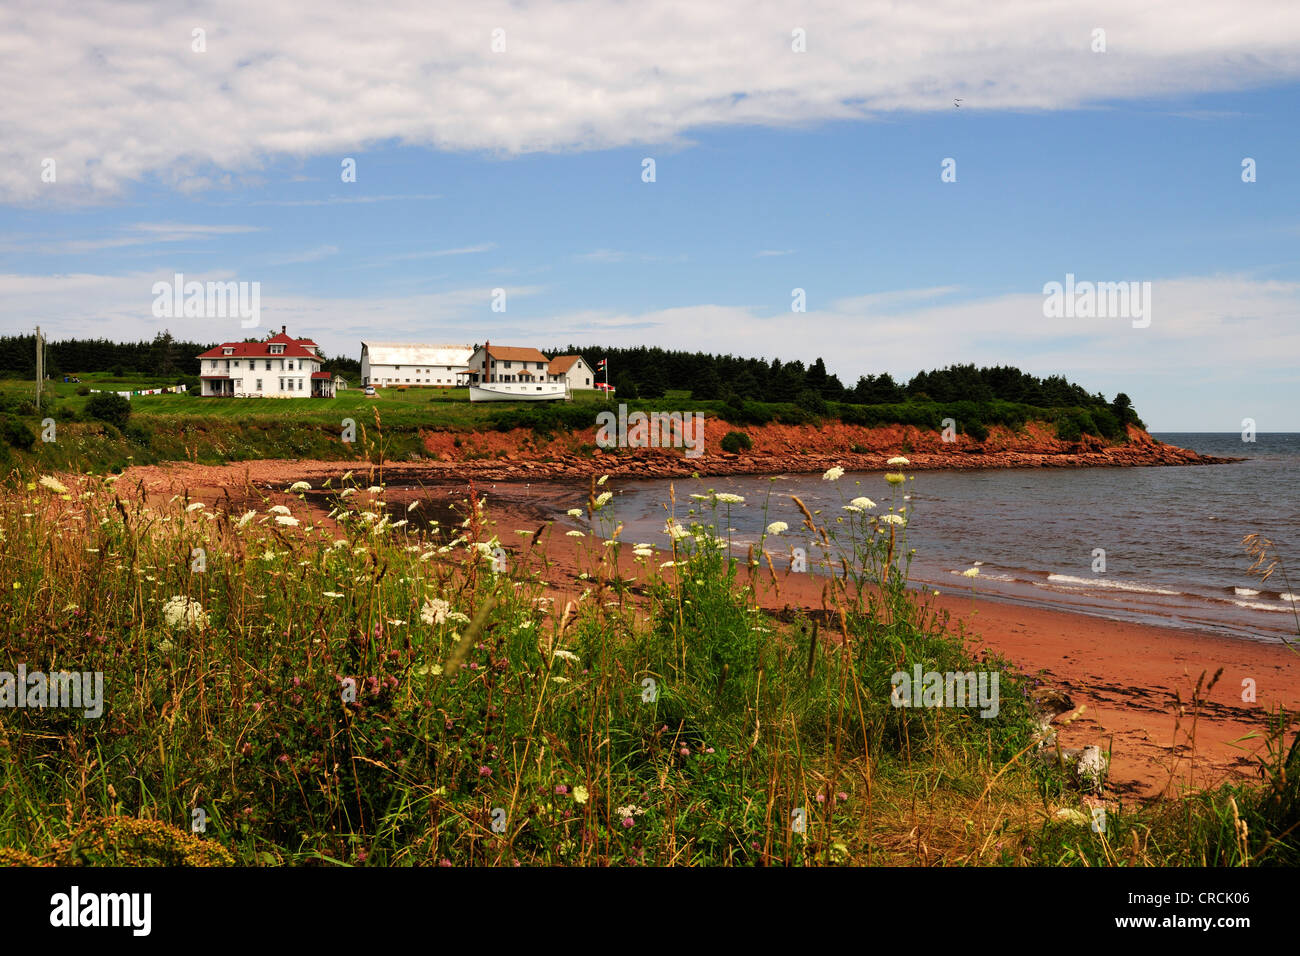 La plage et les falaises de grès rouge dans le parc national de l'île, l'Île du Prince Édouard, Canada, Amérique du Nord Banque D'Images